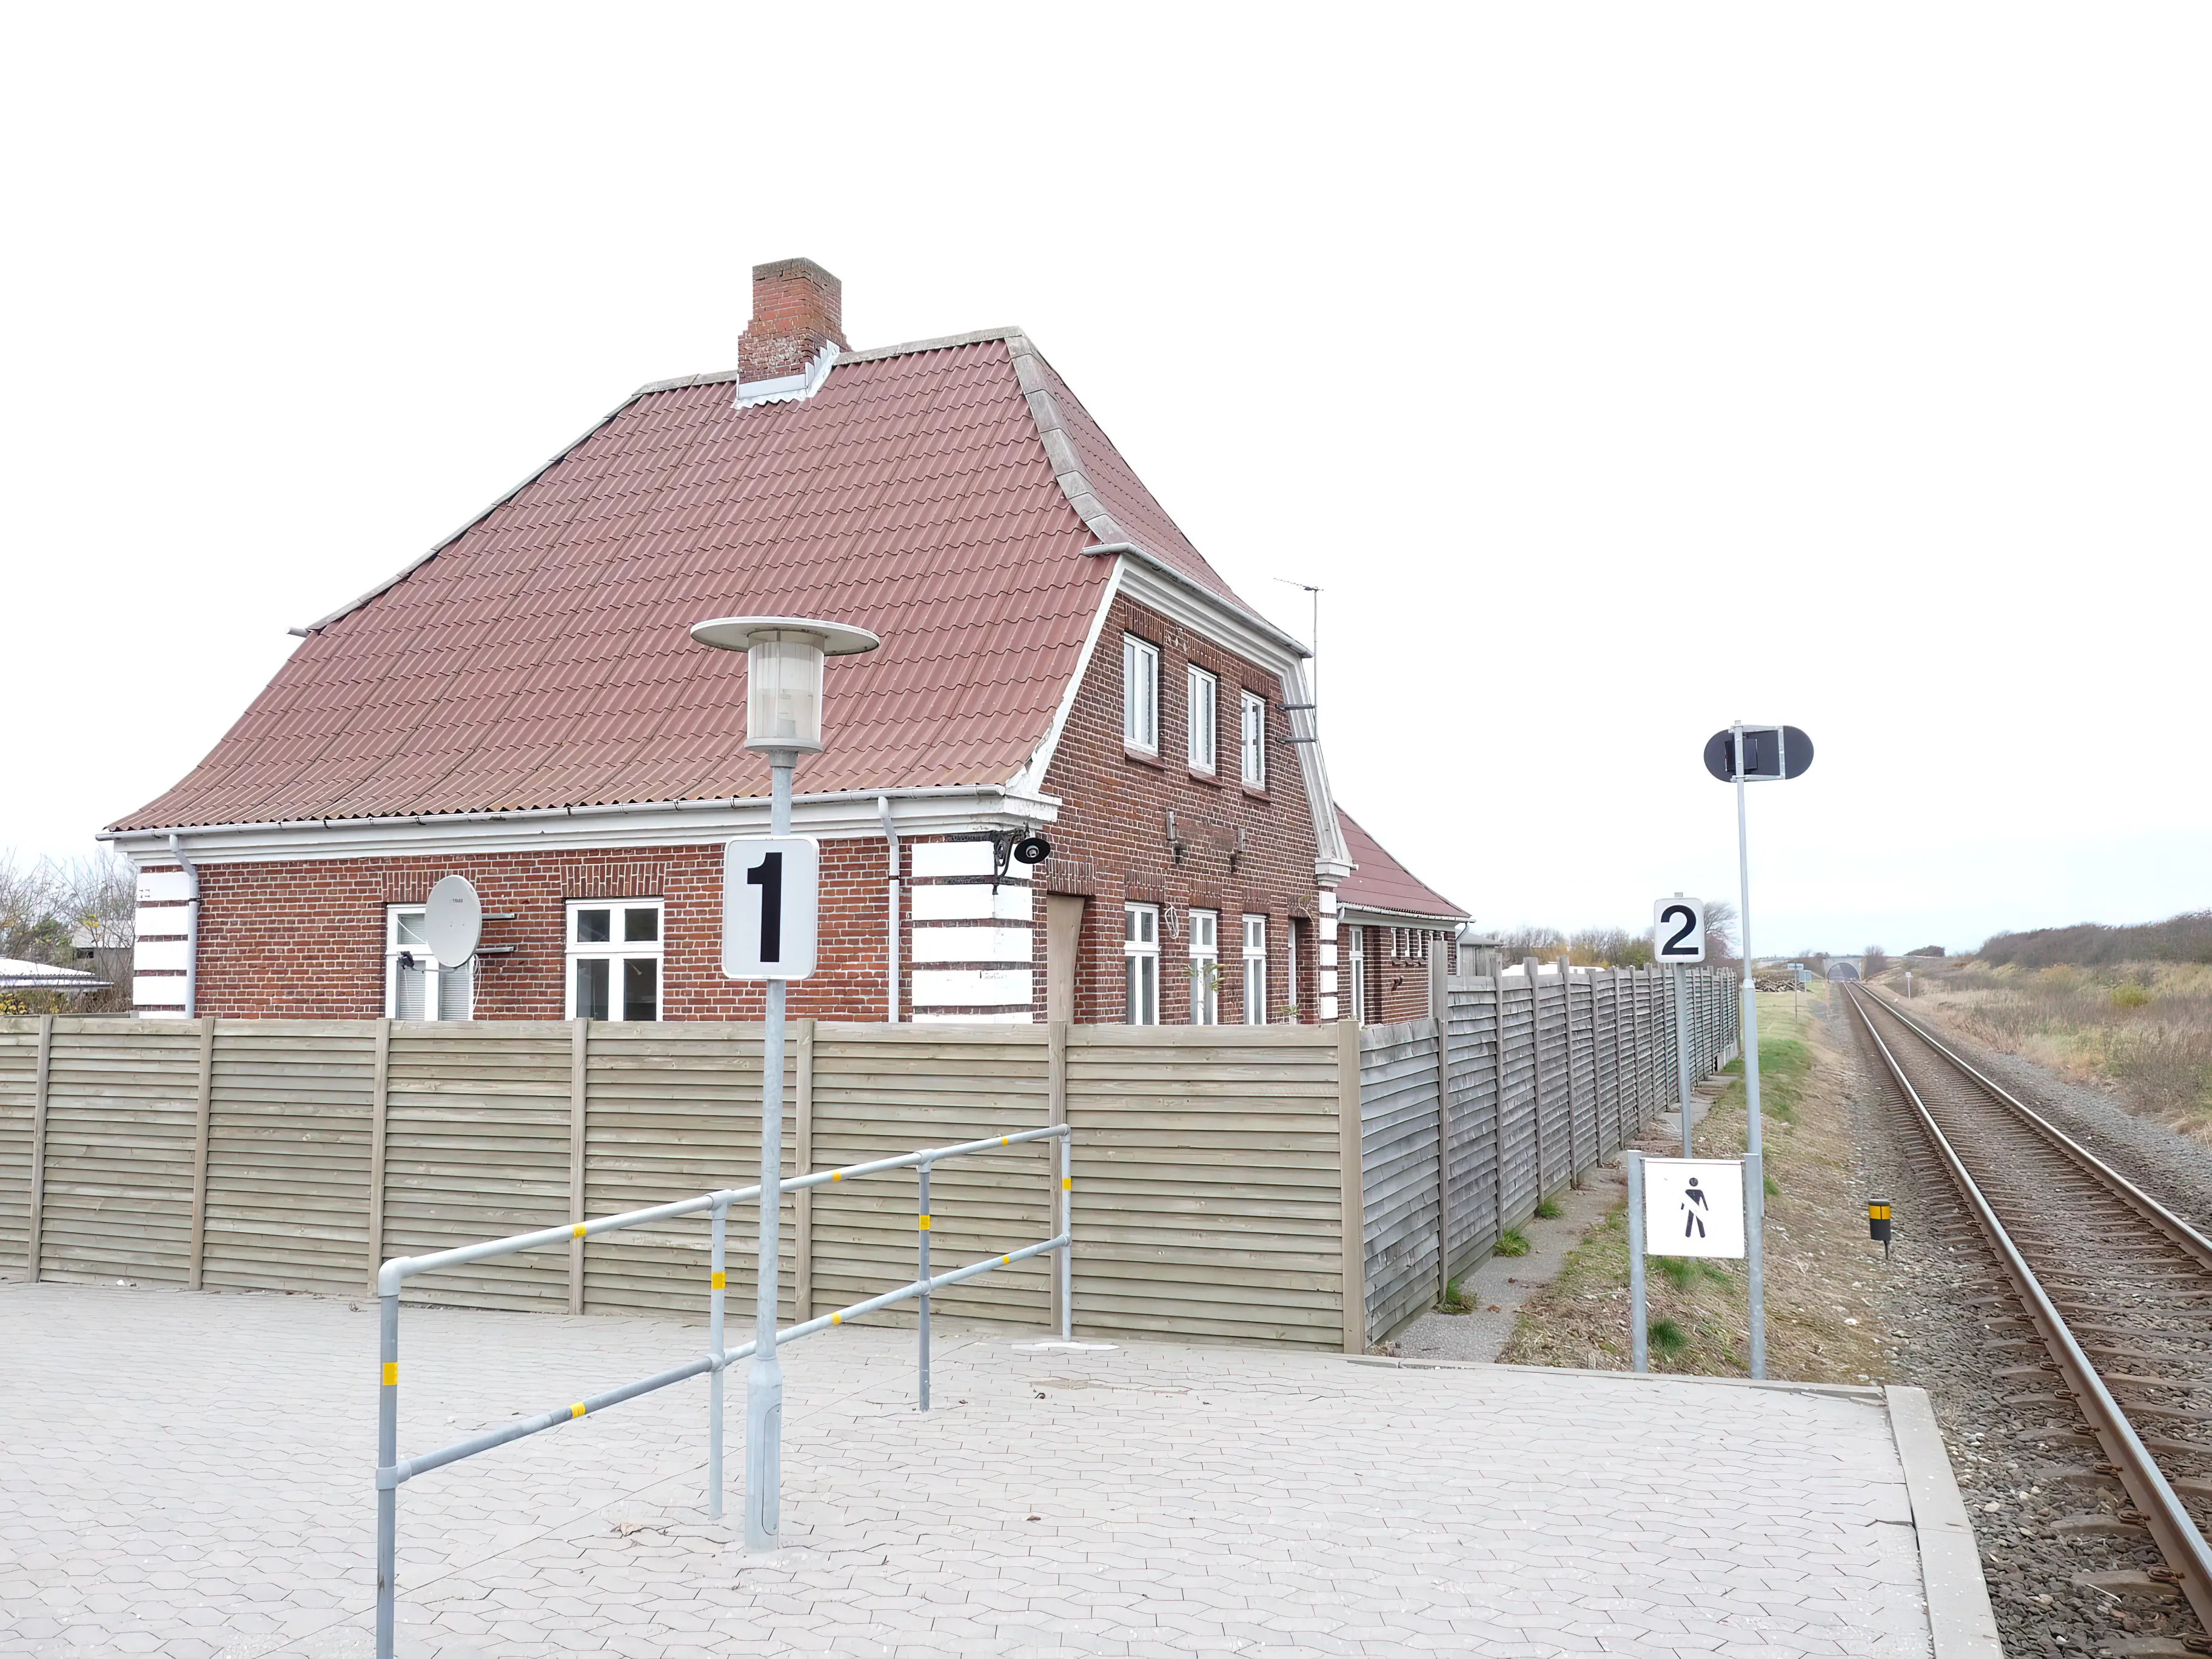 Billede af Vidstrup Station.